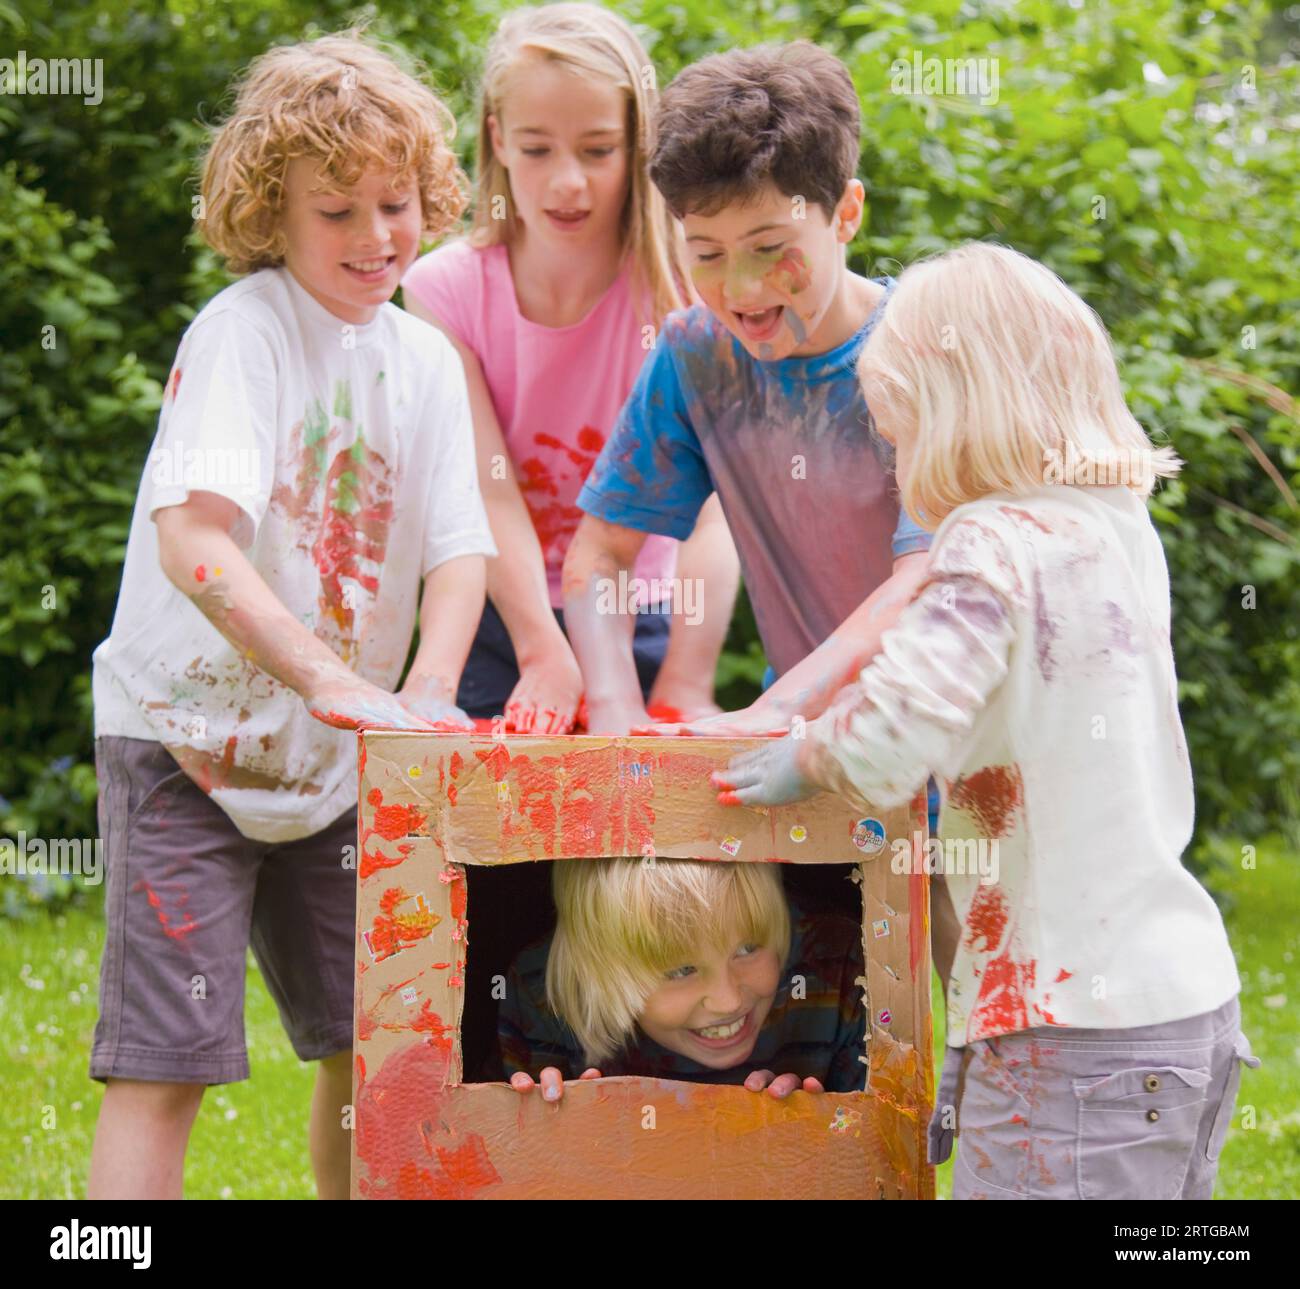 Kinder, die mit Aquarellfarbe bedeckt sind und im Garten spielen, eines davon in einer Pappschachtel Stockfoto